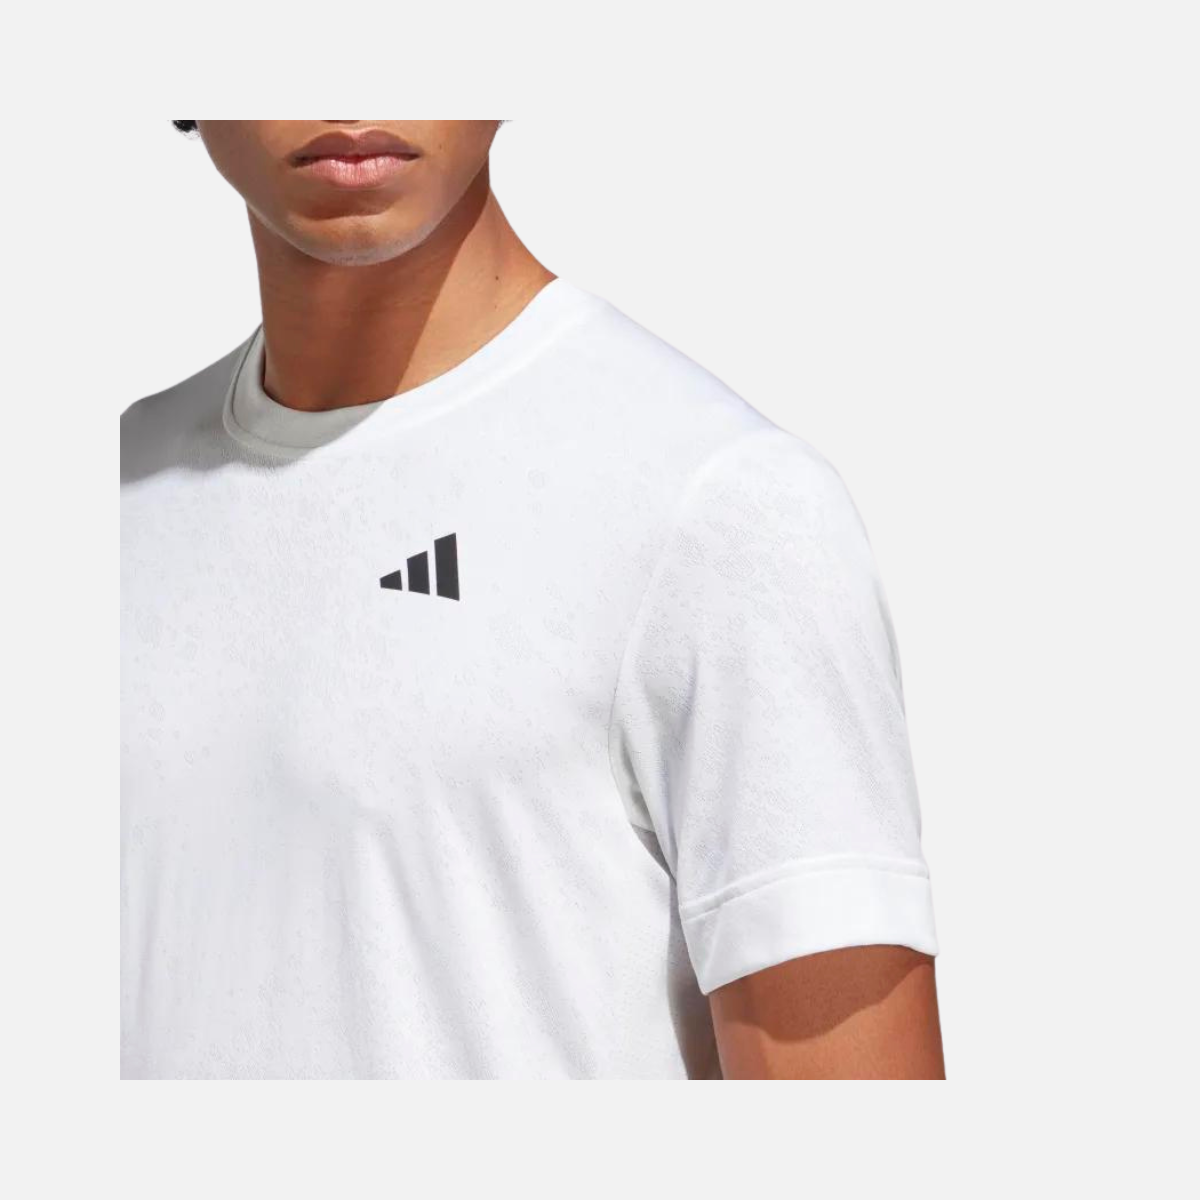 Adidas Tennis Freelift Tee - White